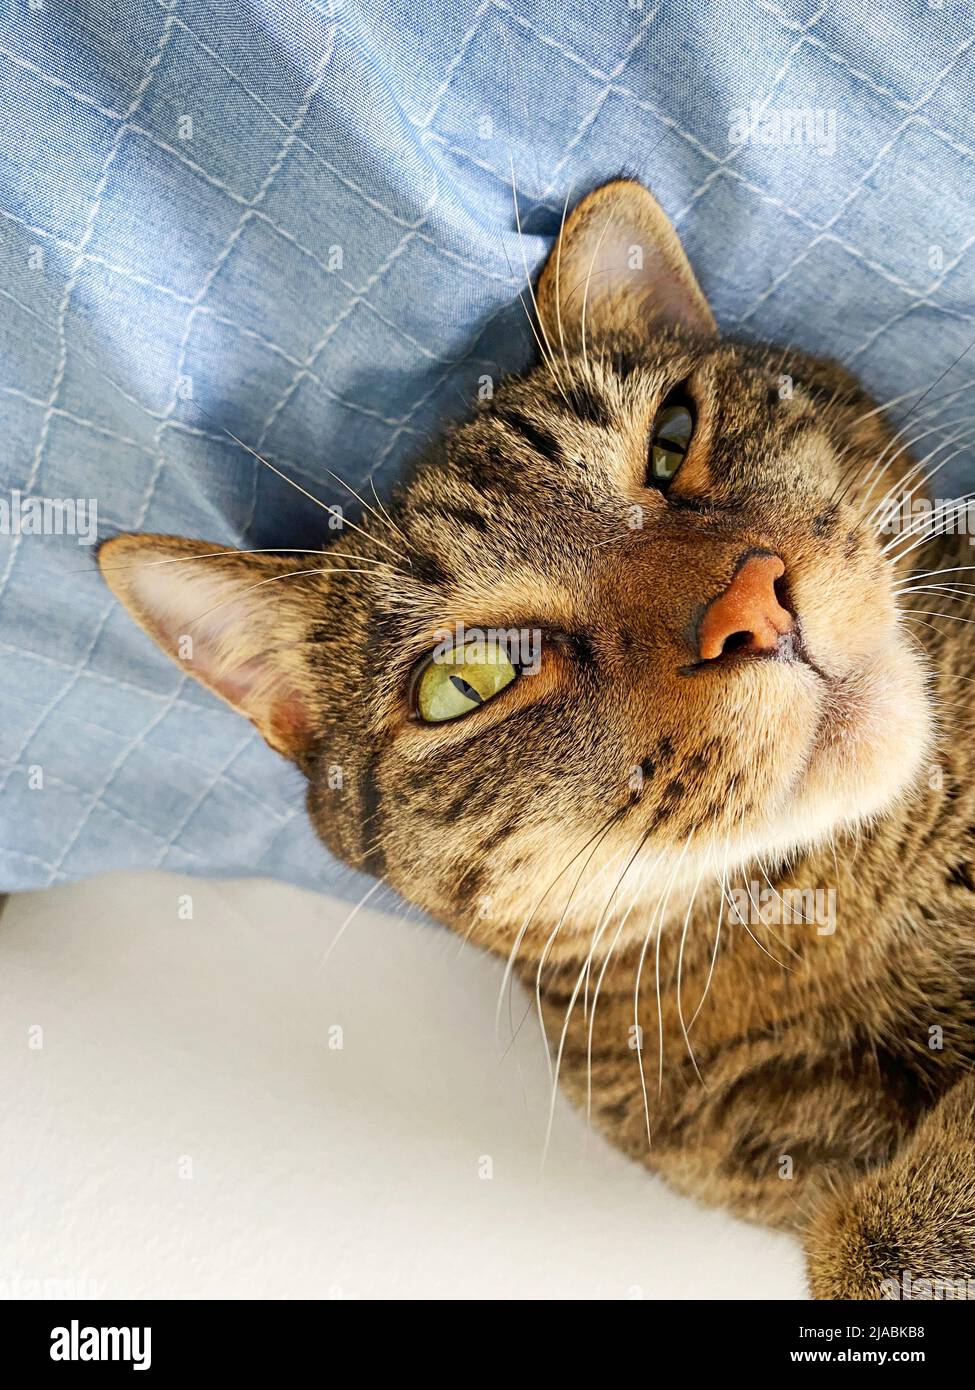 Pensiero gattino. Disteso su fogli e rilassato, il gatto ha un occhio più chiuso e riproduce una sensazione di pensieri. Foto Stock